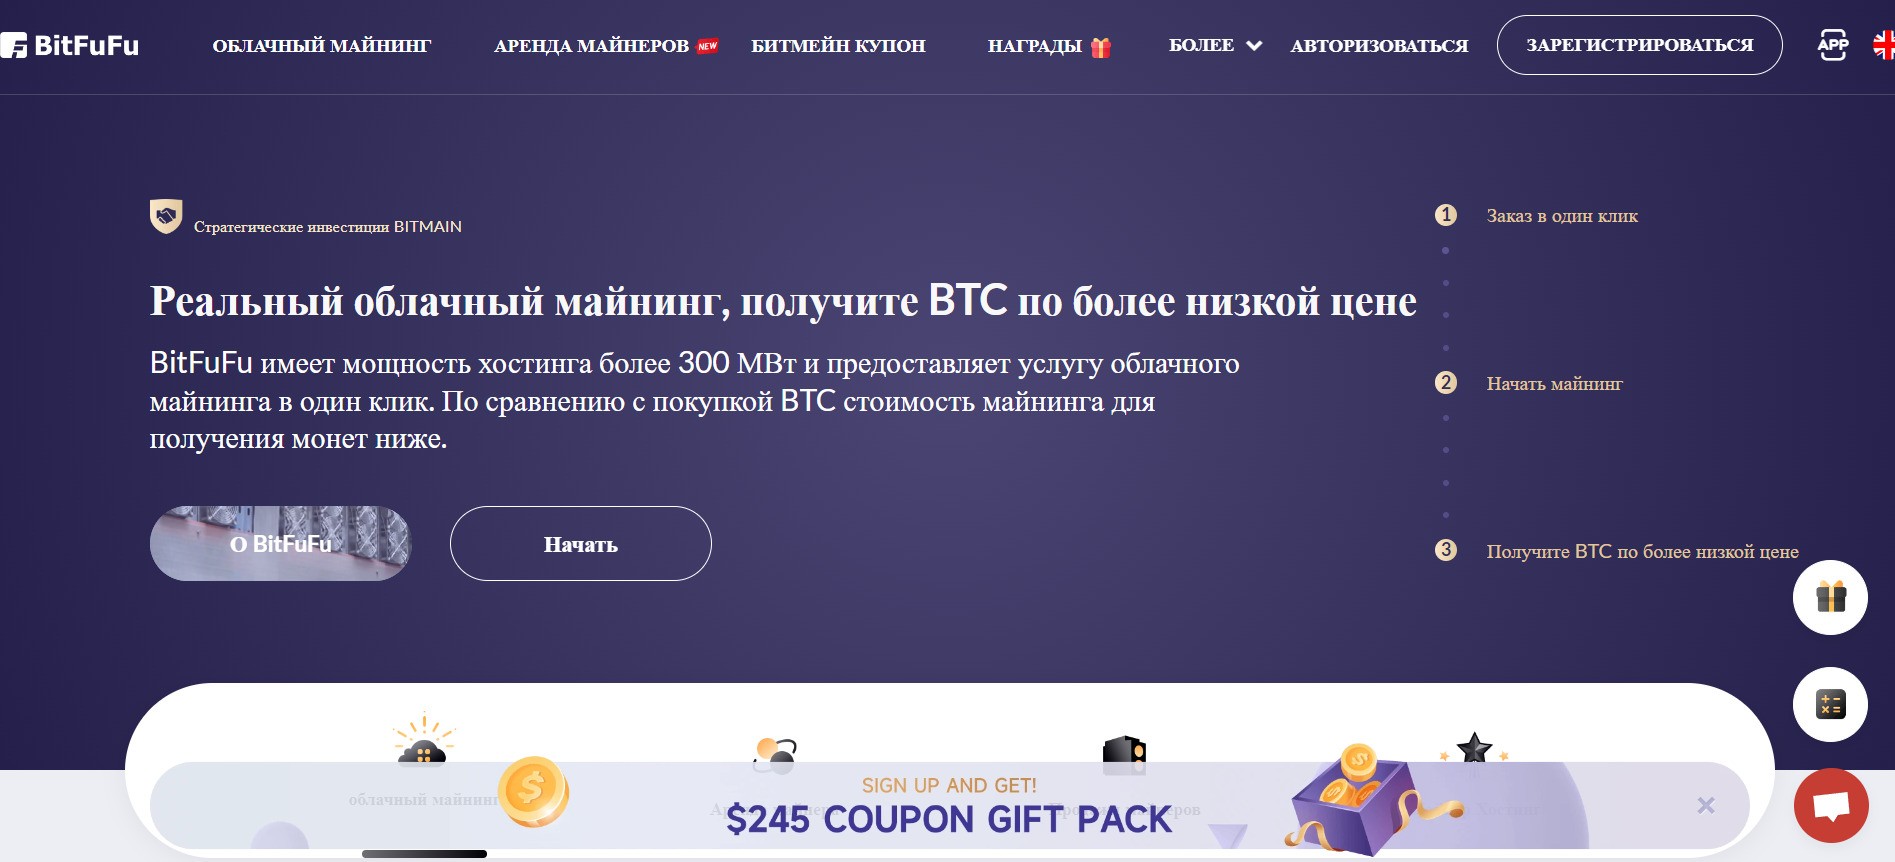 Сайт сервиса BitFuFu